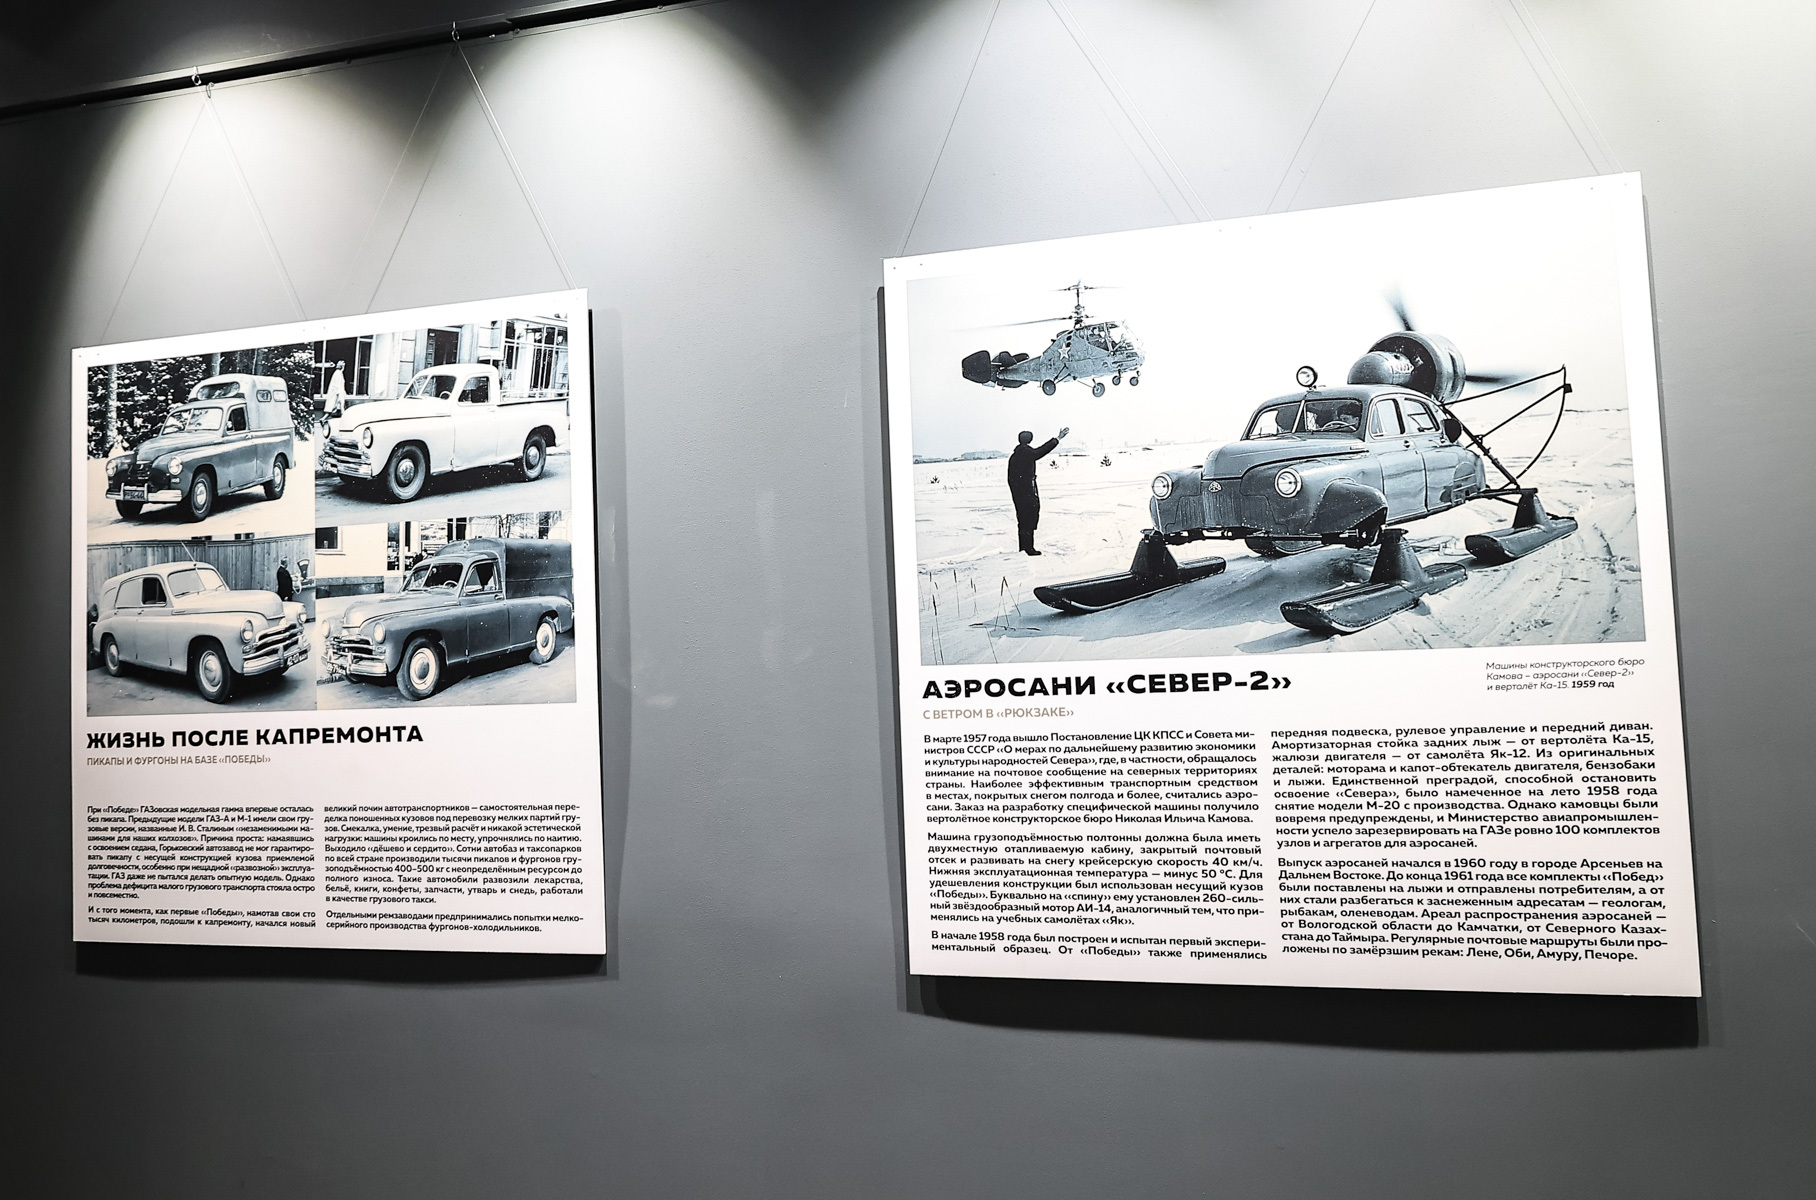 Экспонаты выставки окружены информационными стендами, которые рассказывают о работе завода, о конструкторах, об опытных и специальных образцах машин.